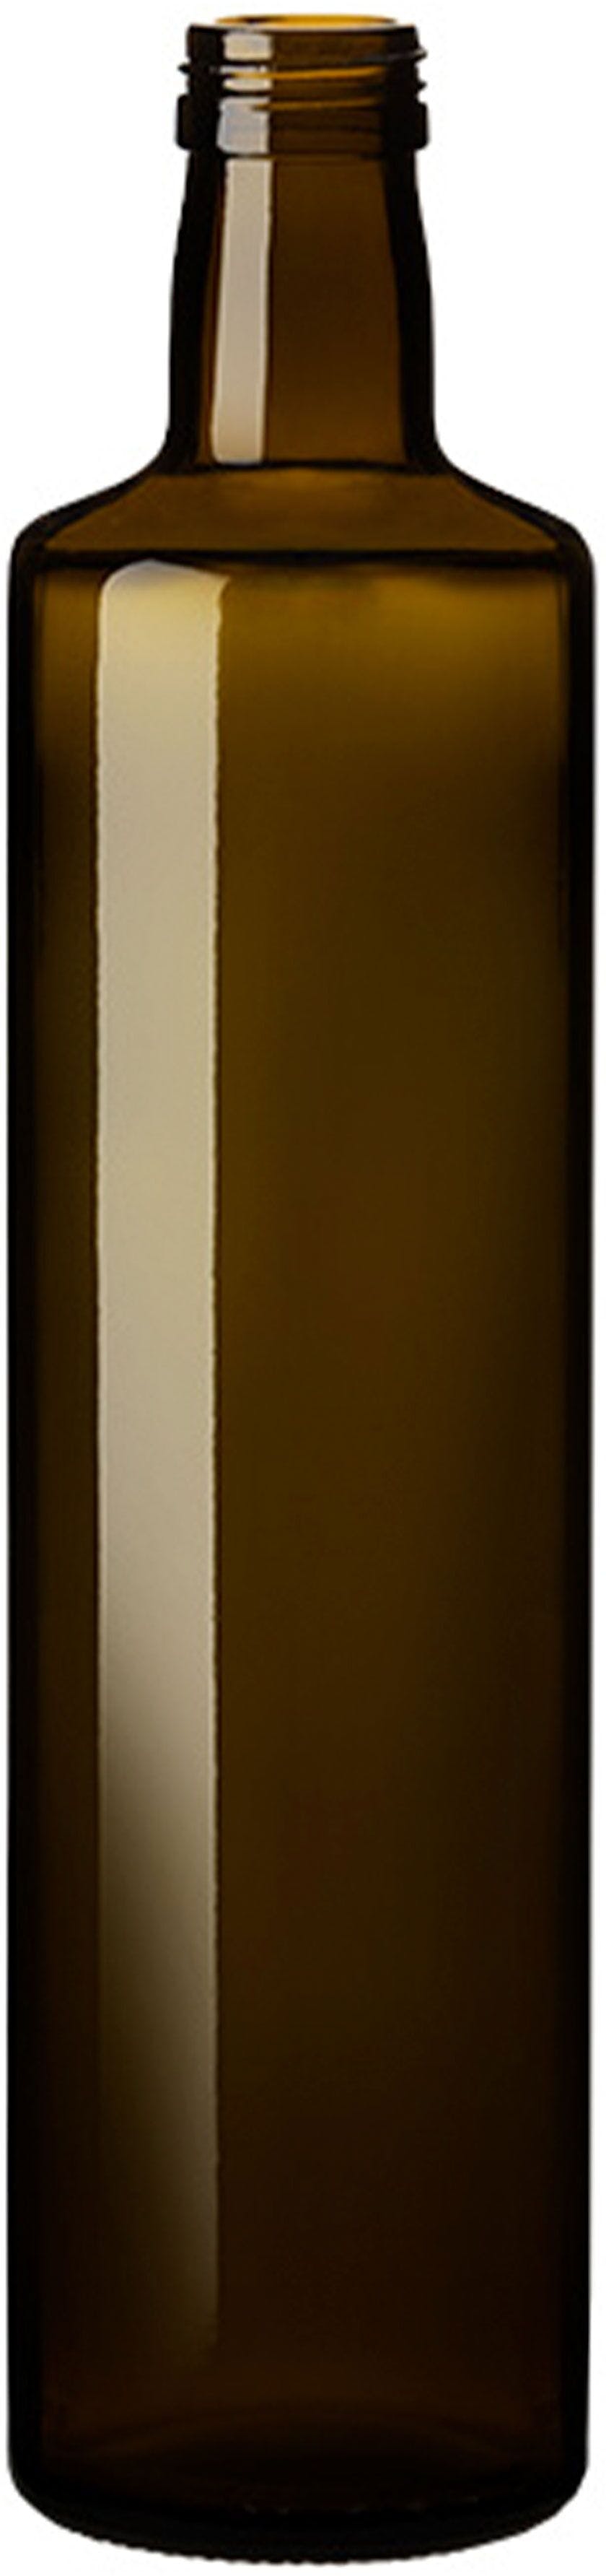 Bottle DORICA 750 P 31,5 VQ